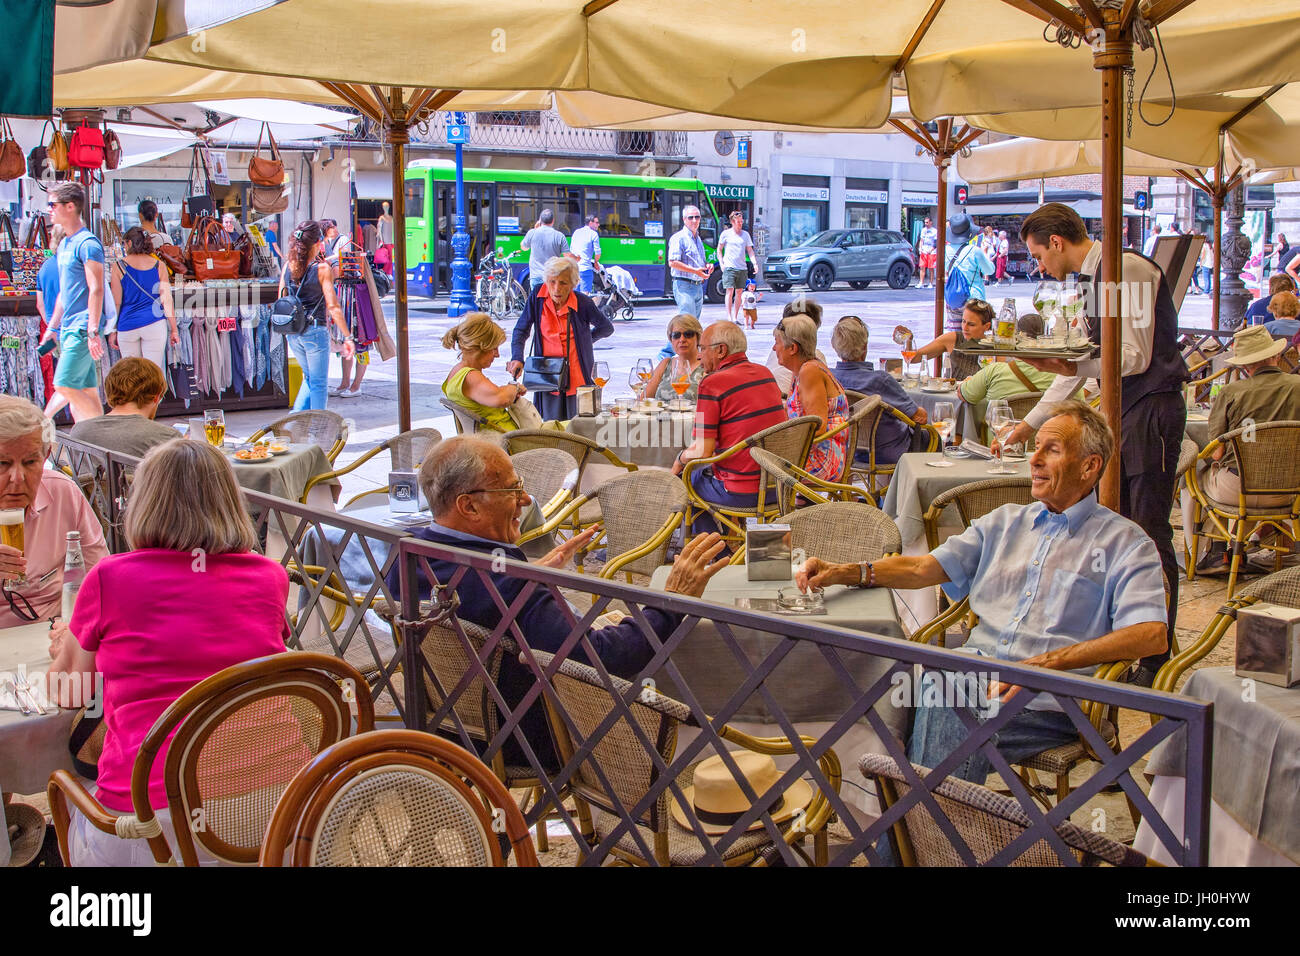 Cafe in Piazza delle Erbe a Verona Foto Stock